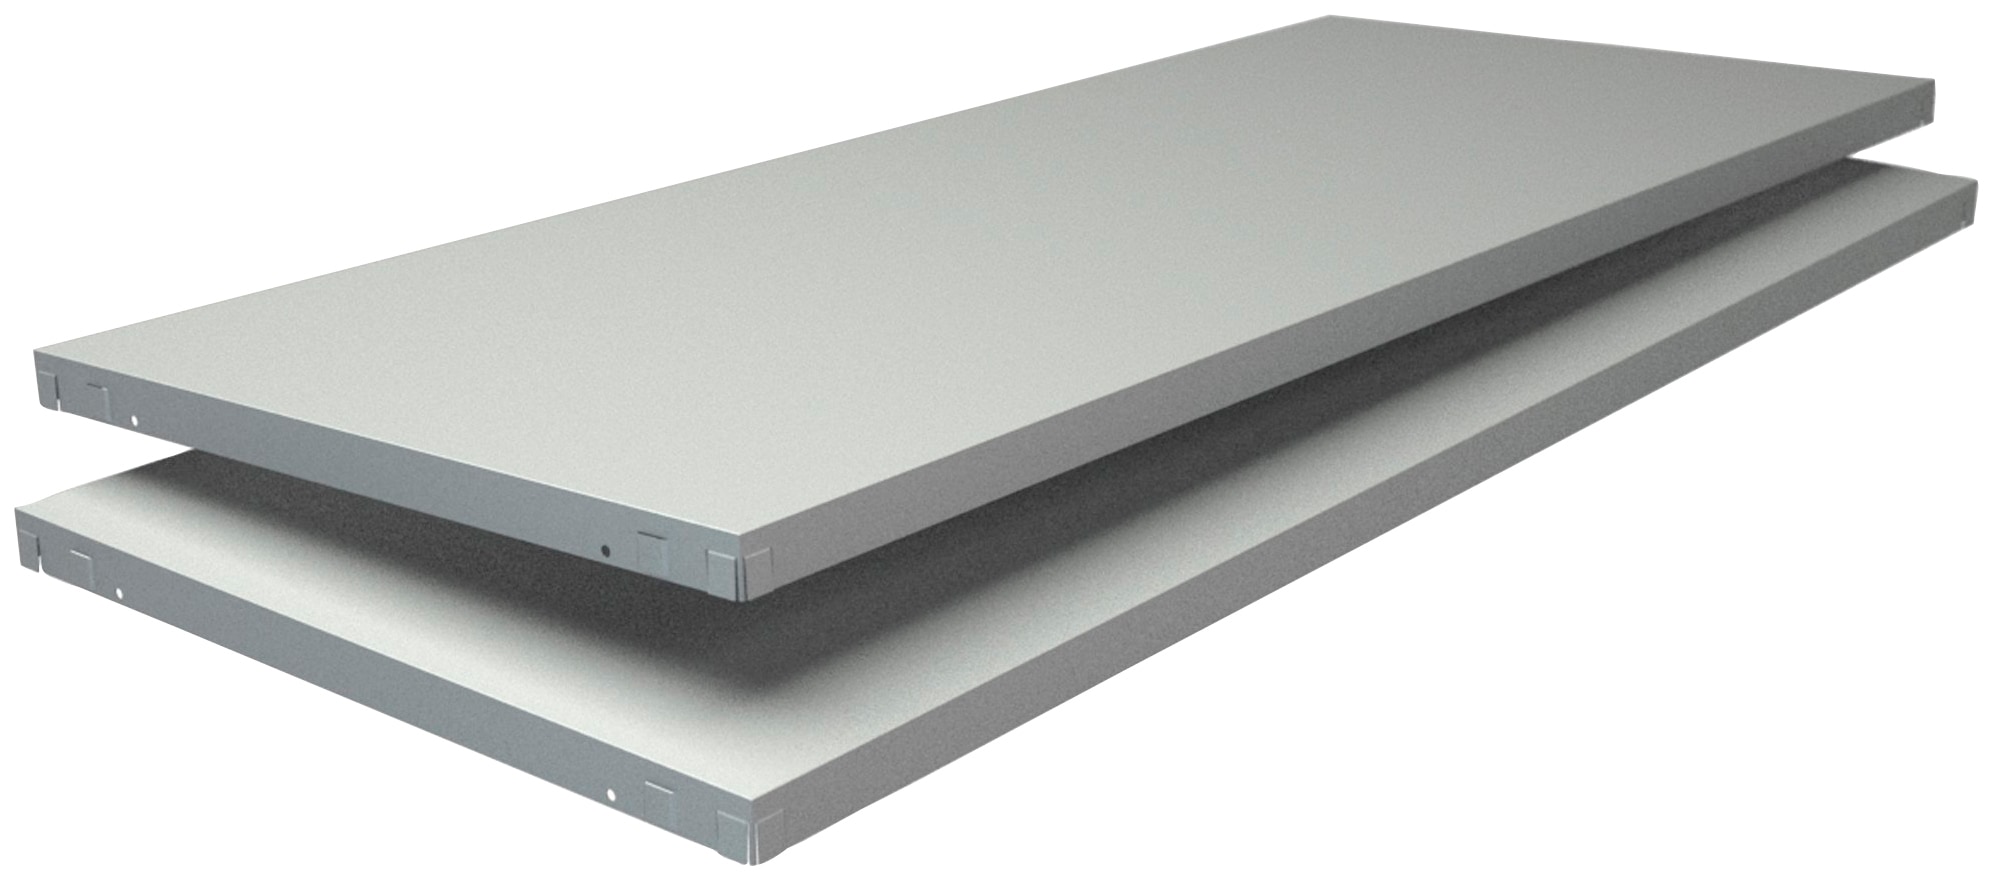 SCHULTE Regalwelt Regalelement »Stecksystem-Fachboden PowerMax«, 2 Stück weiß, 1200x500 mm